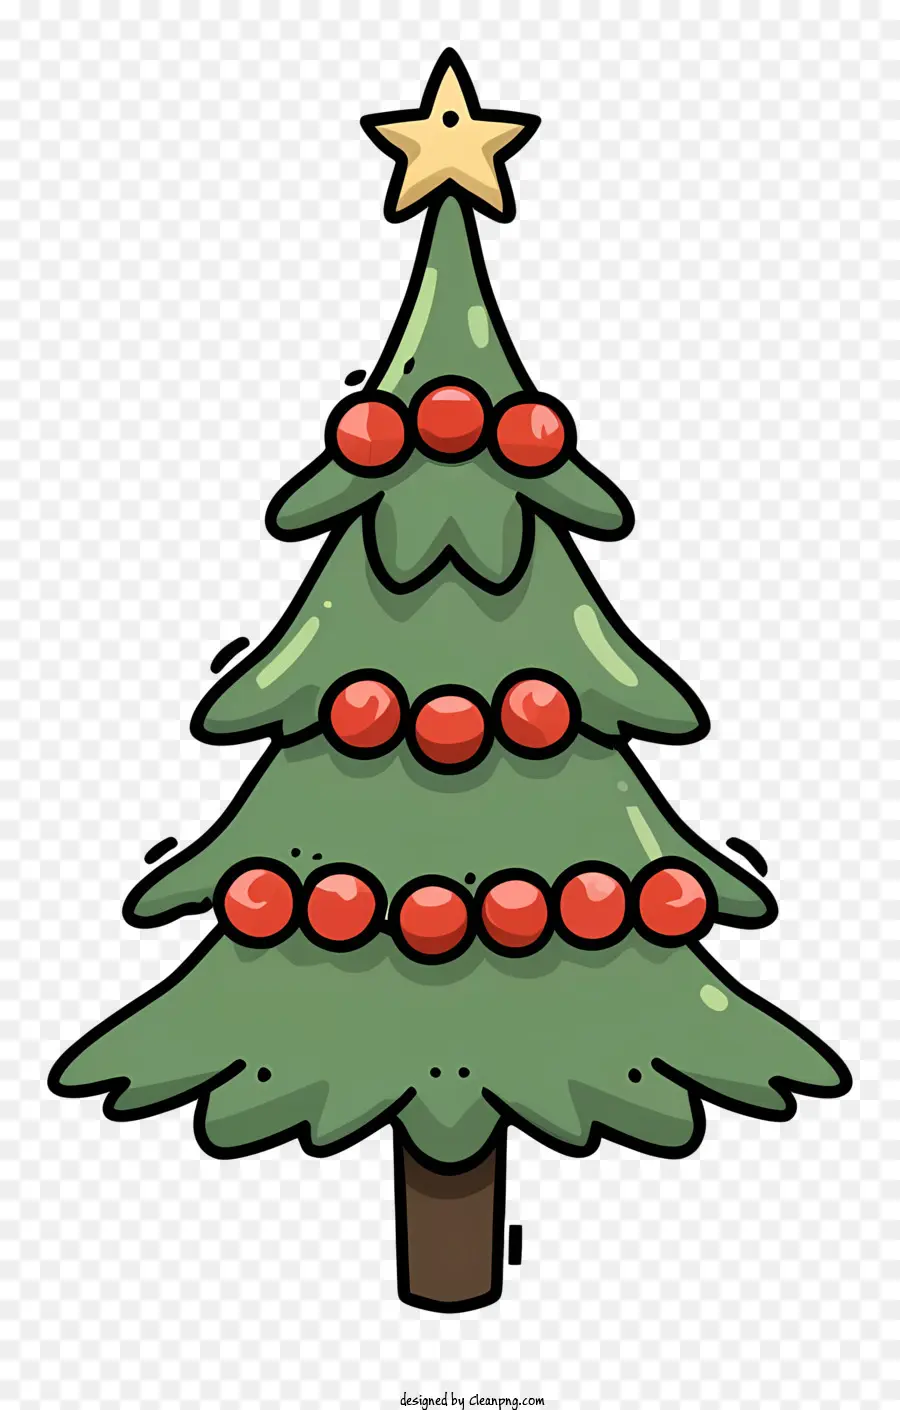 Weihnachtsbaum - Grüner Weihnachtsbaum mit roten Beeren, einfaches Design